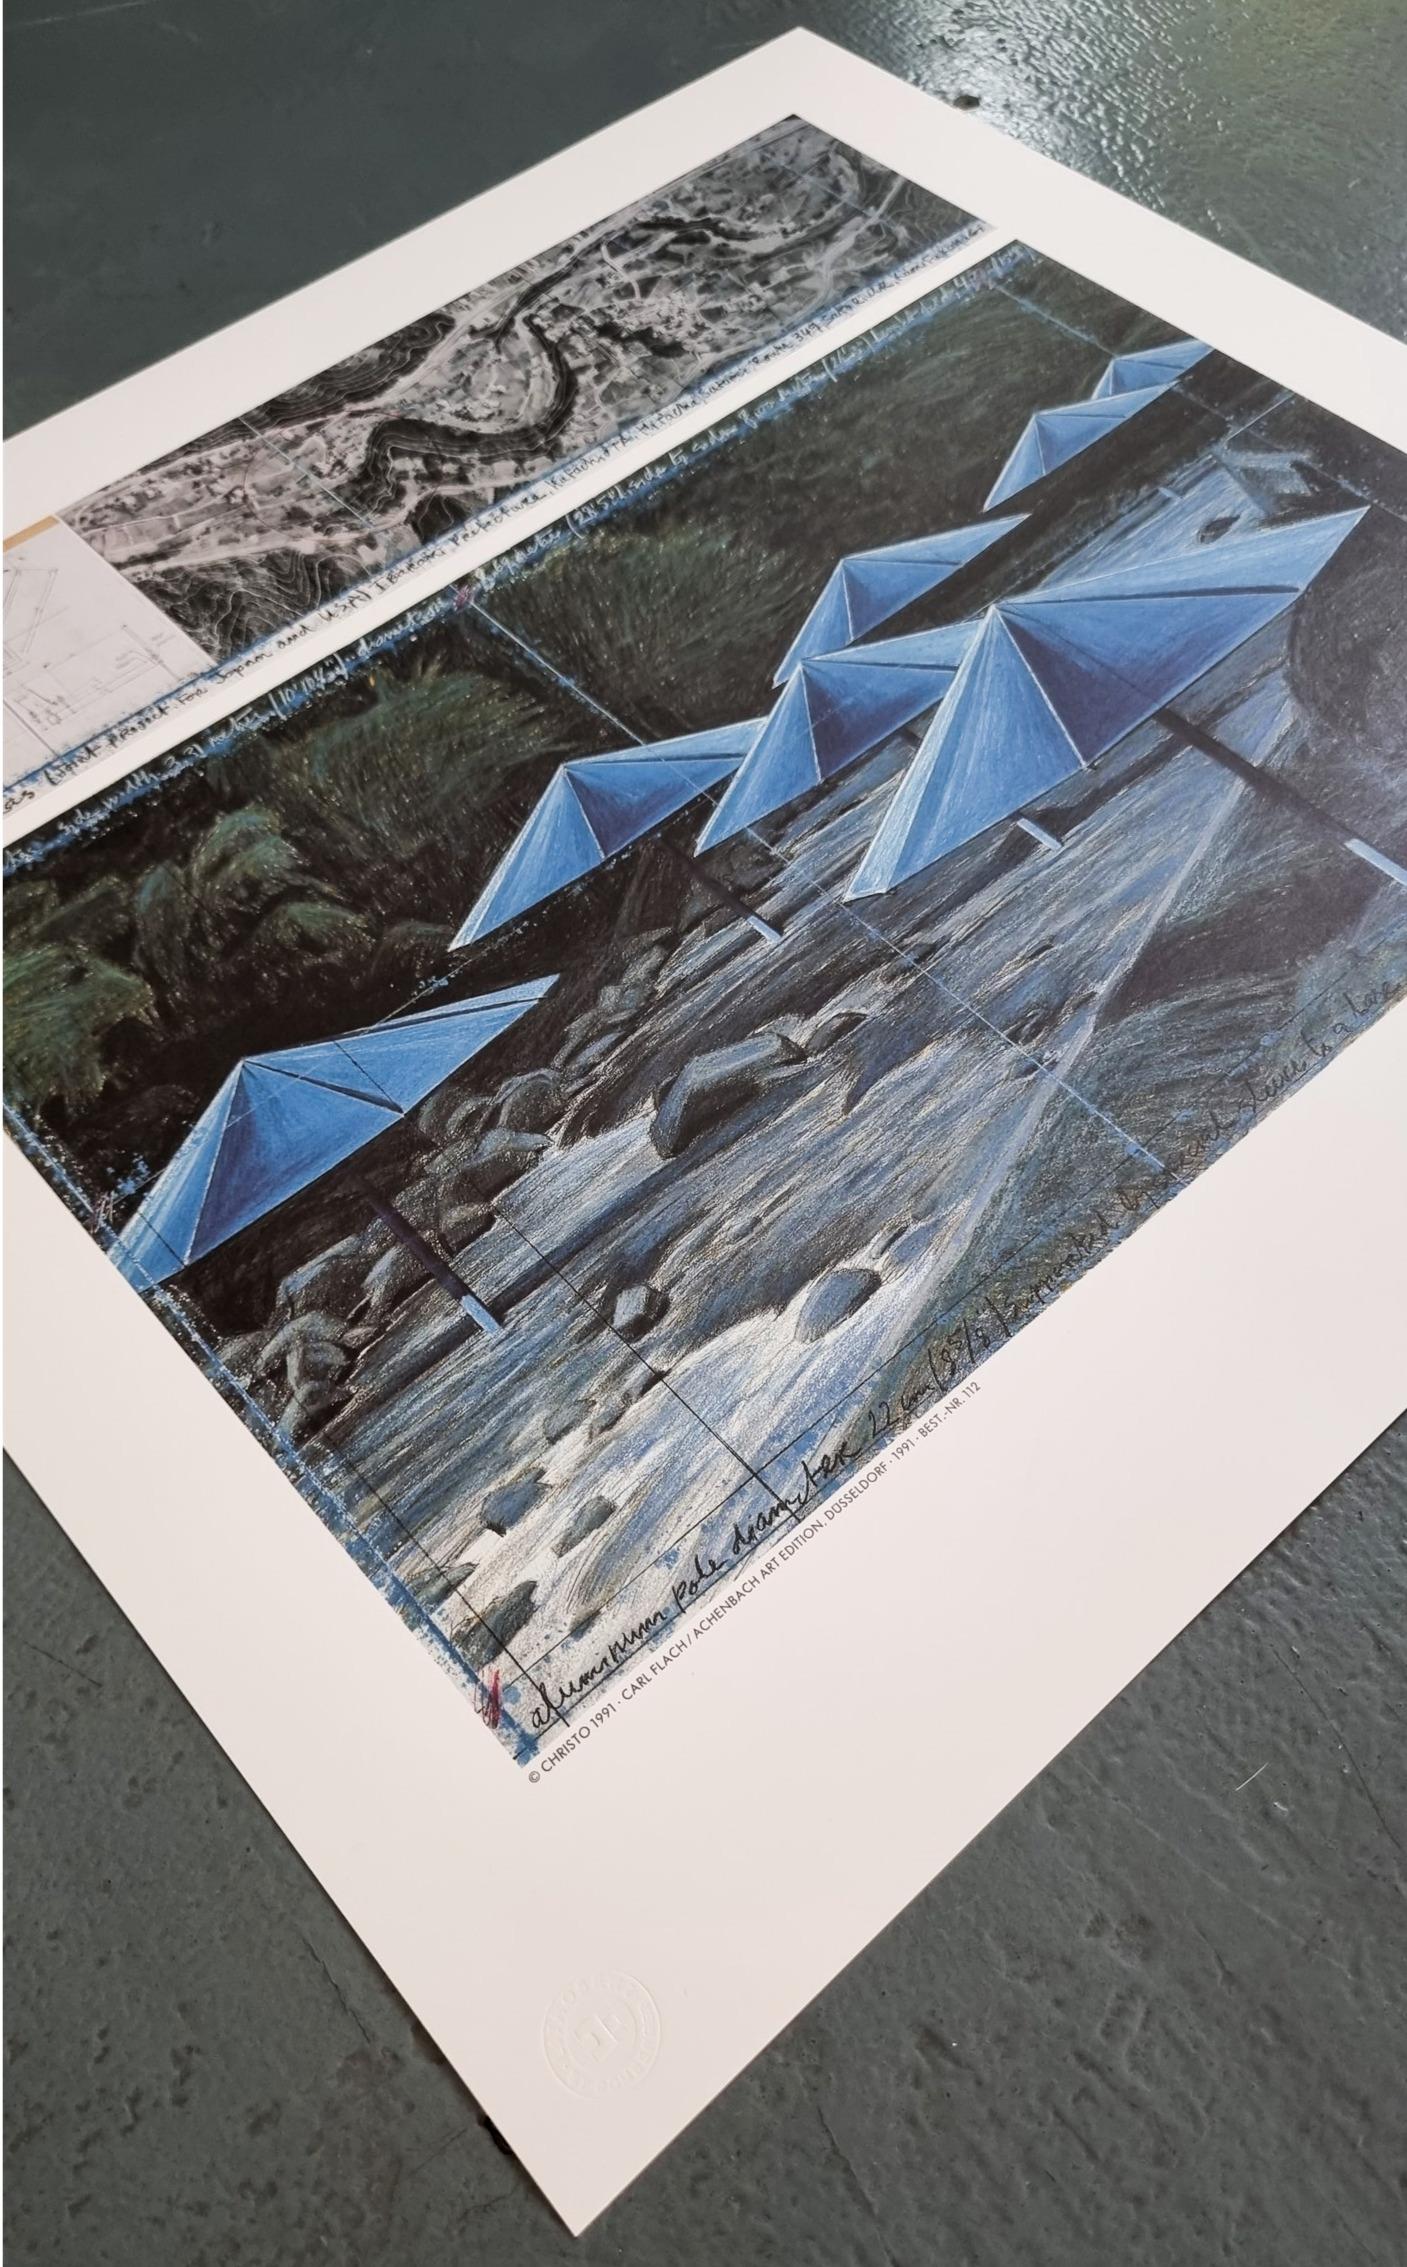 The Umbrellas (Blue) (ENCADRÉ - NOIR OU BLANC - AU CHOIX - LIVRAISON GRATUITE AUX ÉTATS-UNIS) - Moderne Print par Christo and Jeanne-Claude